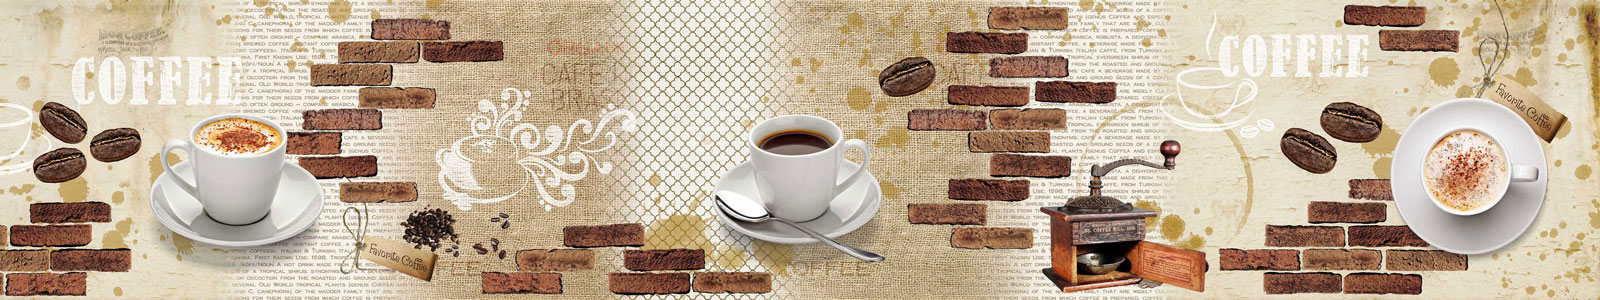 №6282 - Чашки кофе на винтажном фоне